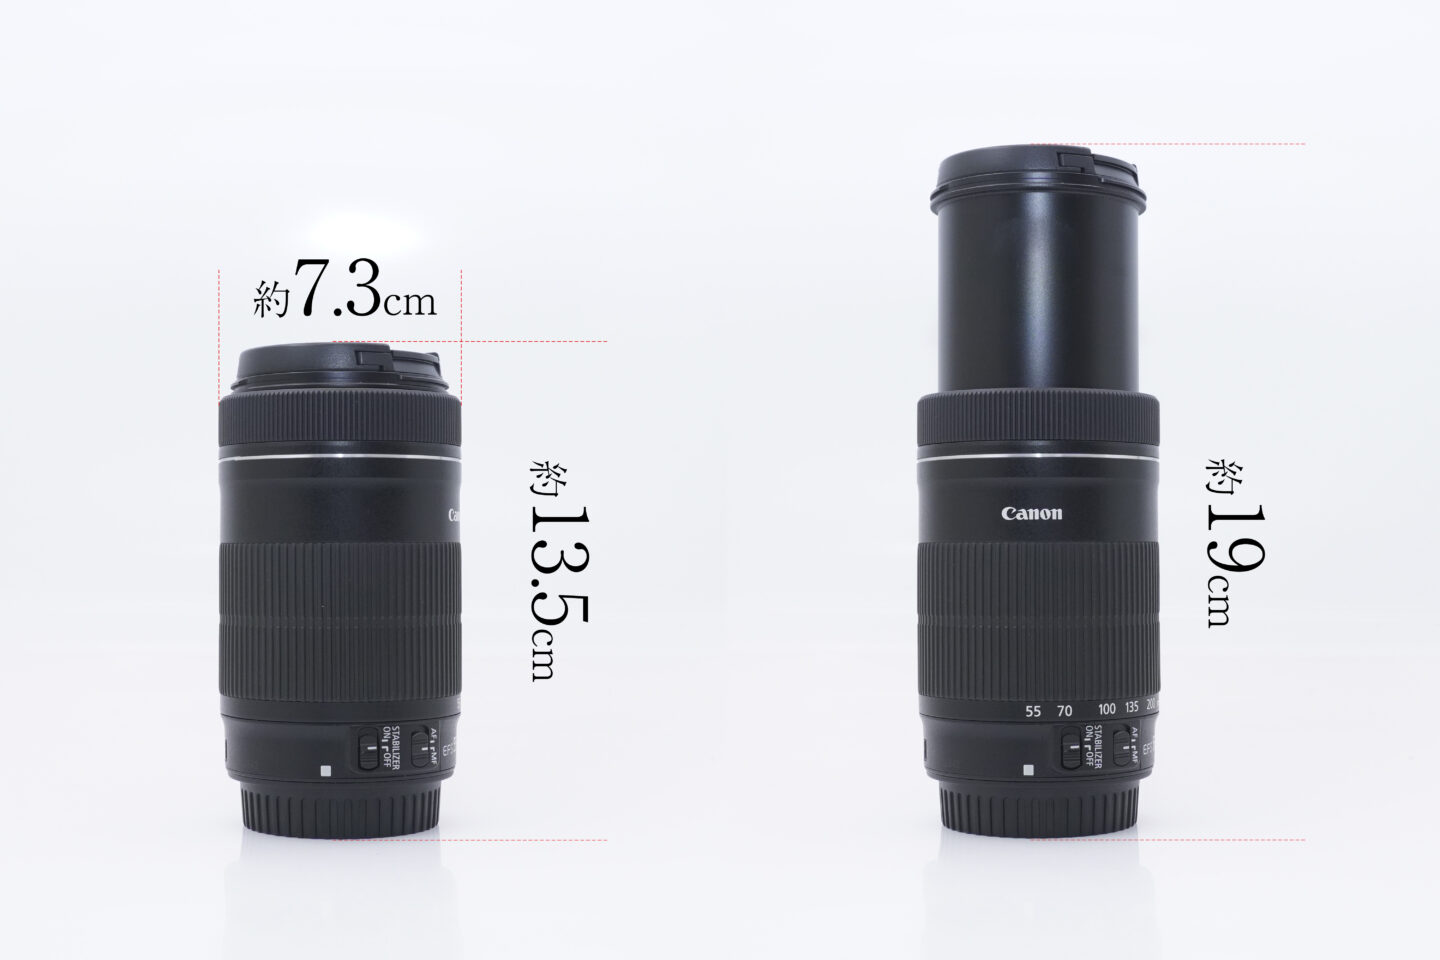 Canon EF-S 55-250mm 手ブレ補正つき望遠レンズ - レンズ(ズーム)